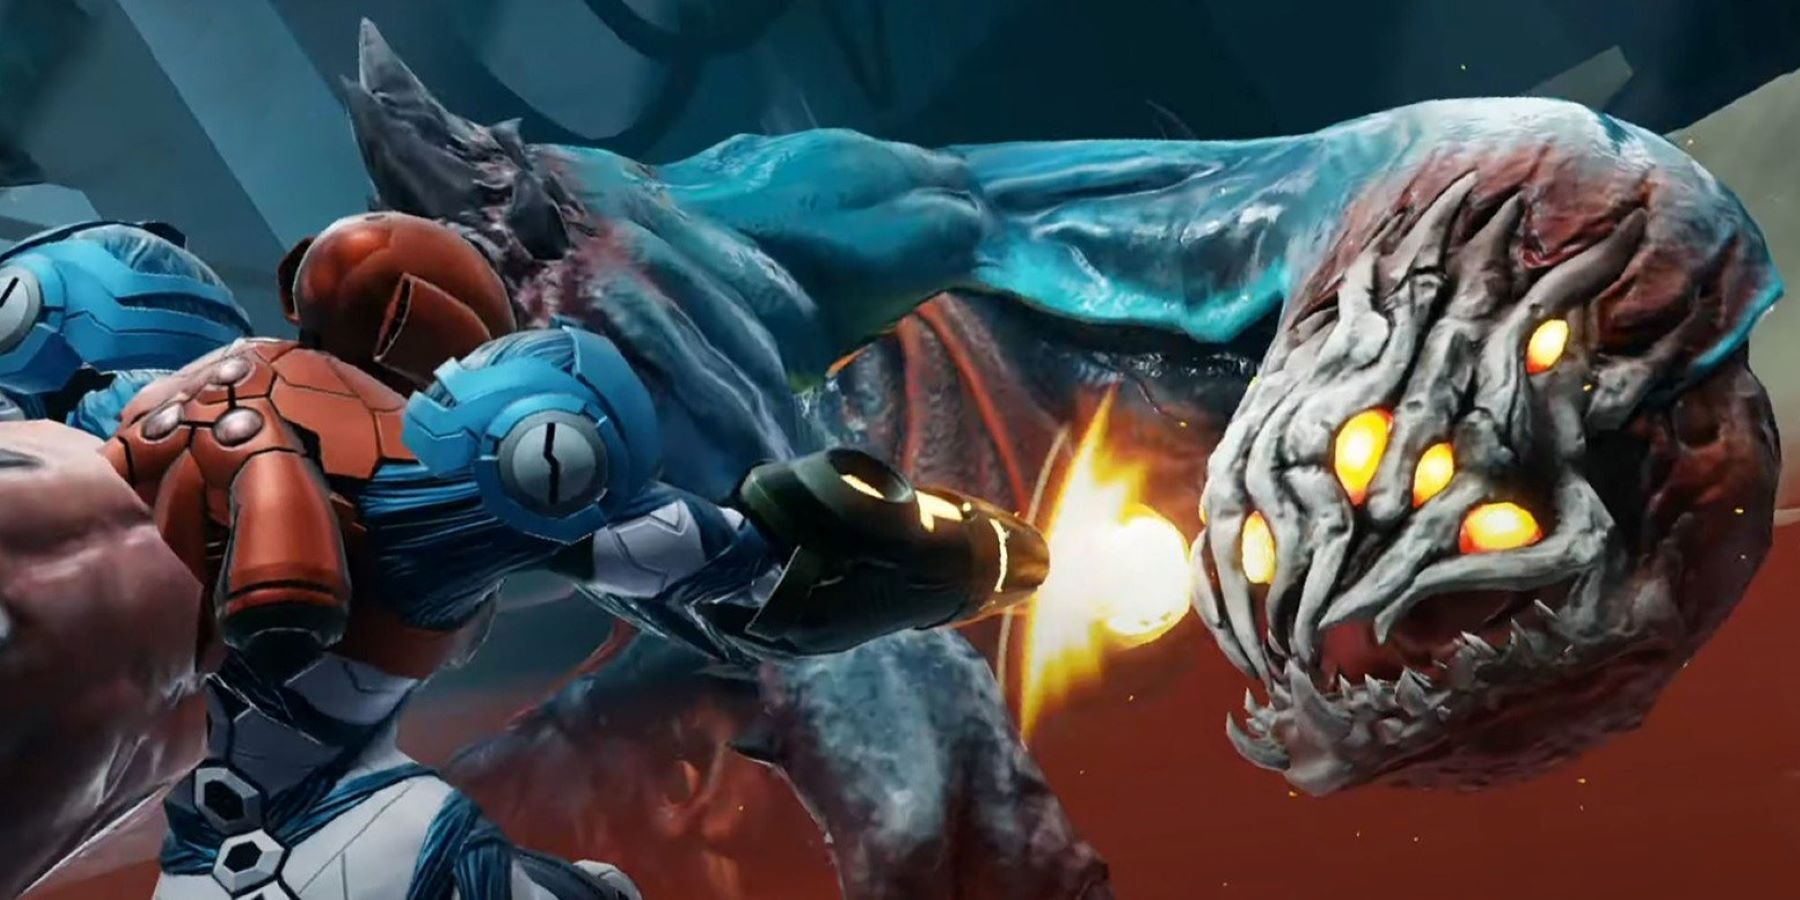 Samus Aran firing at an approaching monster in Metroid Dread